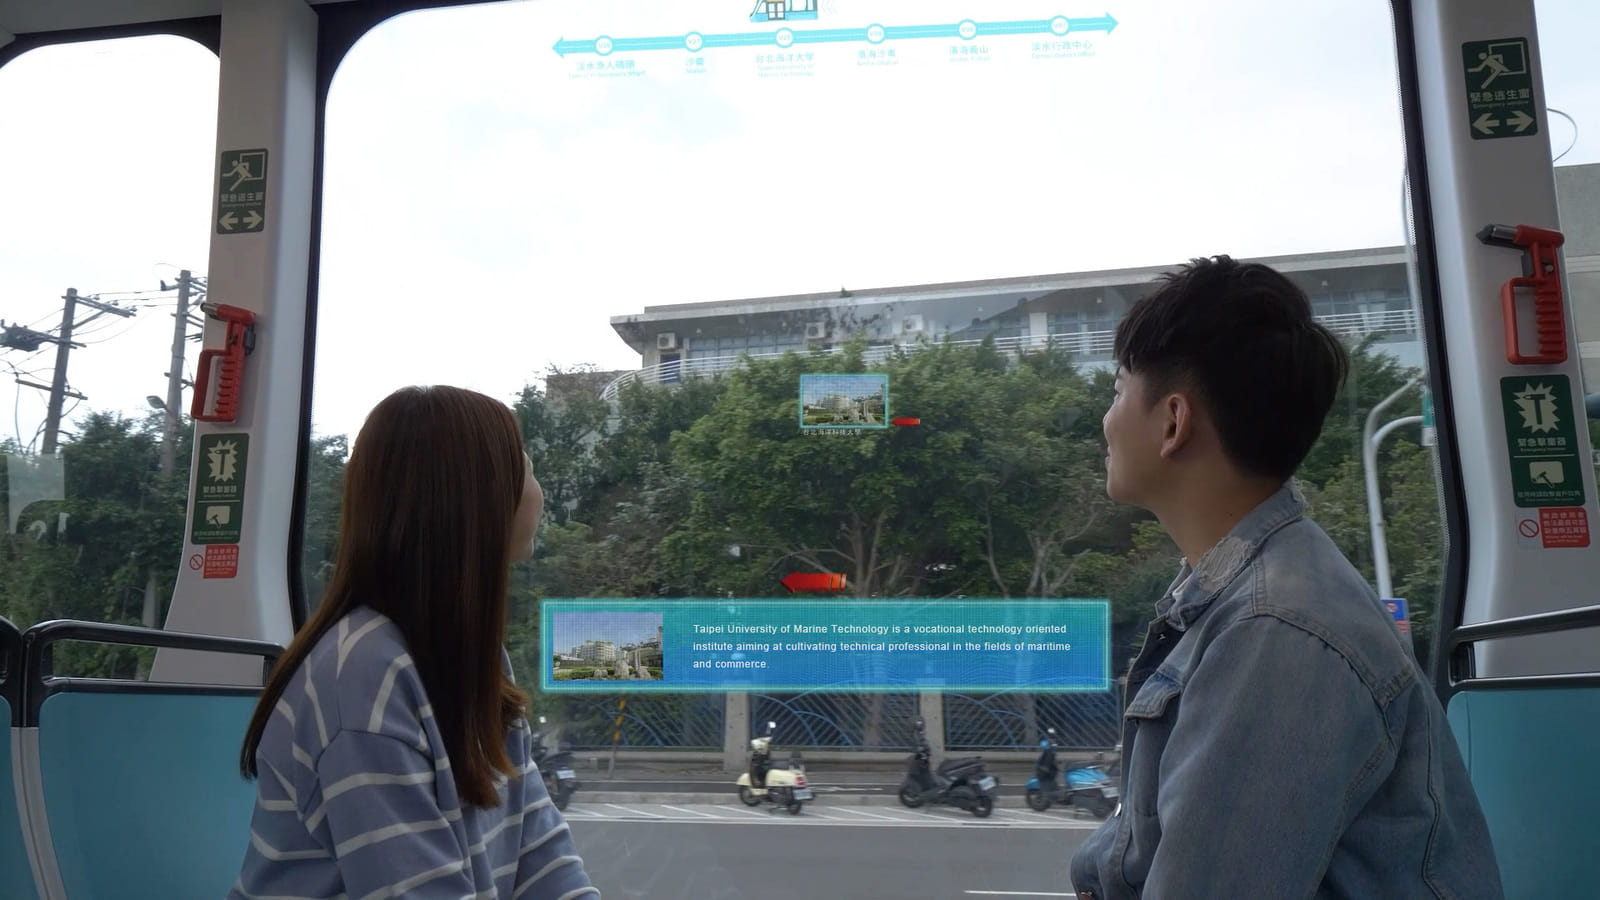 透過景物GPS座標資料庫和相機追蹤技術，判定乘客視線，將乘客目光焦點的景物資訊呈現於螢幕，秀出導覽資訊。